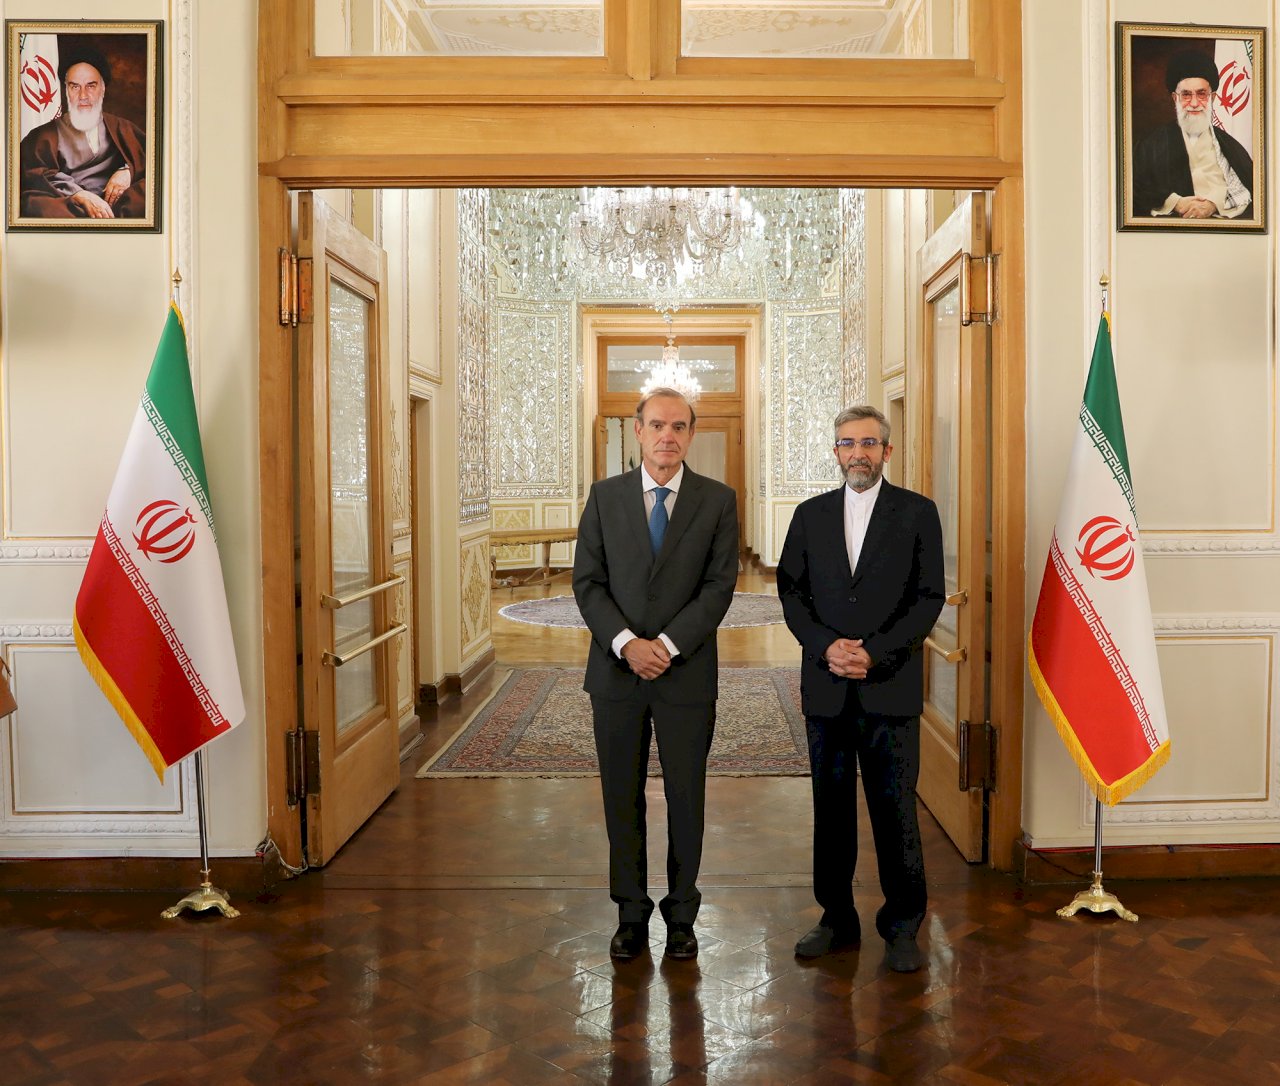 歐盟特使與伊朗副外長會談 聚焦恢復核子協議談判